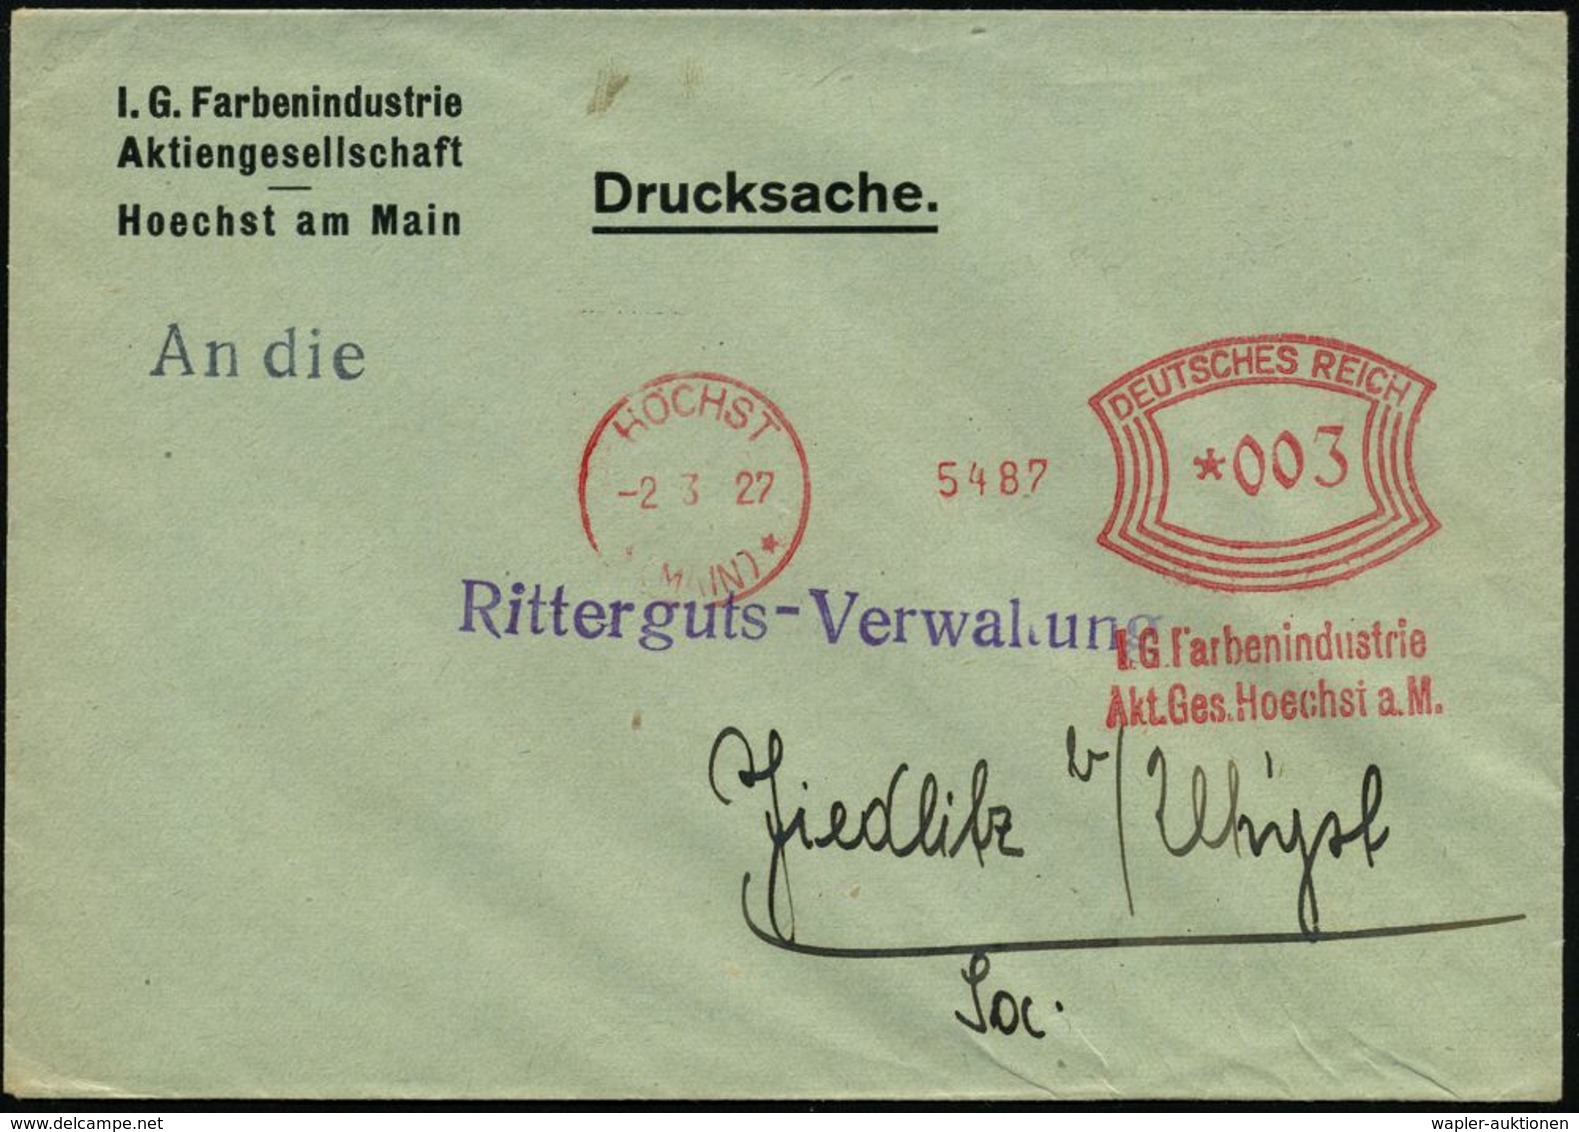 I.-G.-FARBEN INDUSTRIE, TOCHTERFIRMEN & NACHFOLGER : HÖCHST/ *(MAIN)*/ I.G. Farbenindustrie/ Akt.Ges... 1927 (2.3.) Selt - Chimie